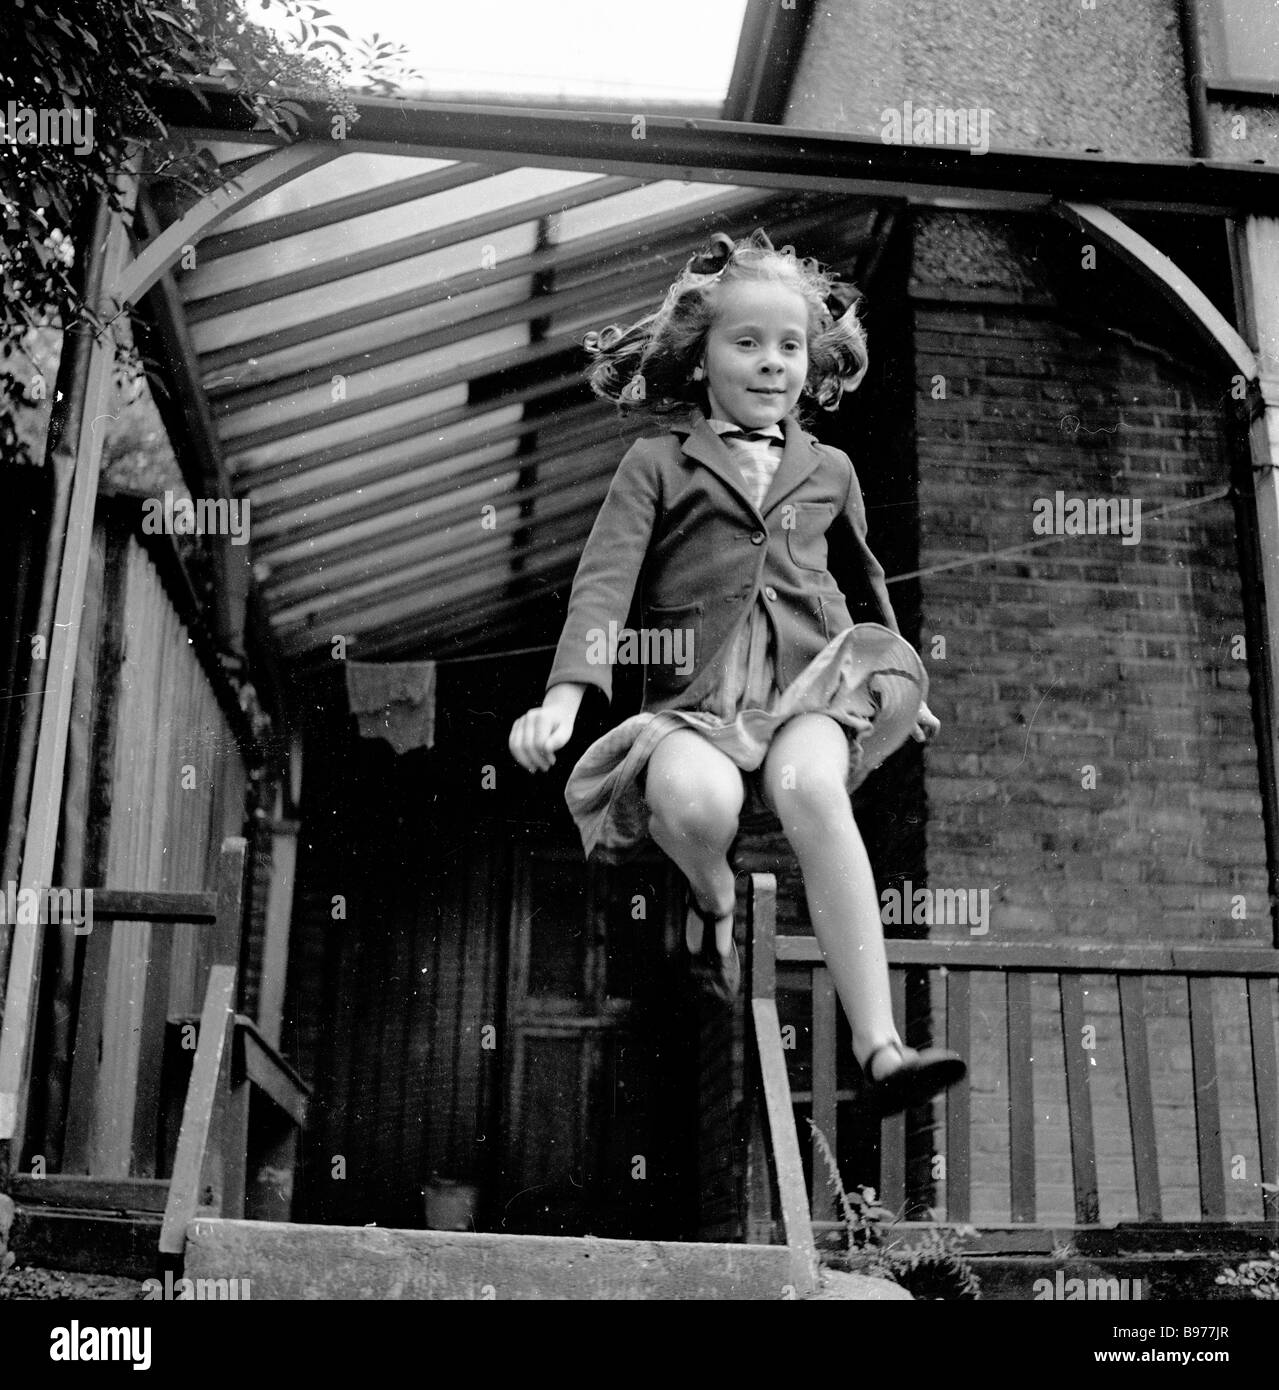 1950s, ein junges Schulmädchen, das von der hinteren Veranda oder der seitlichen Veranda eines Hauses, London England, UK, springt, in diesem historischen Bild von J Allan Cash. Stockfoto